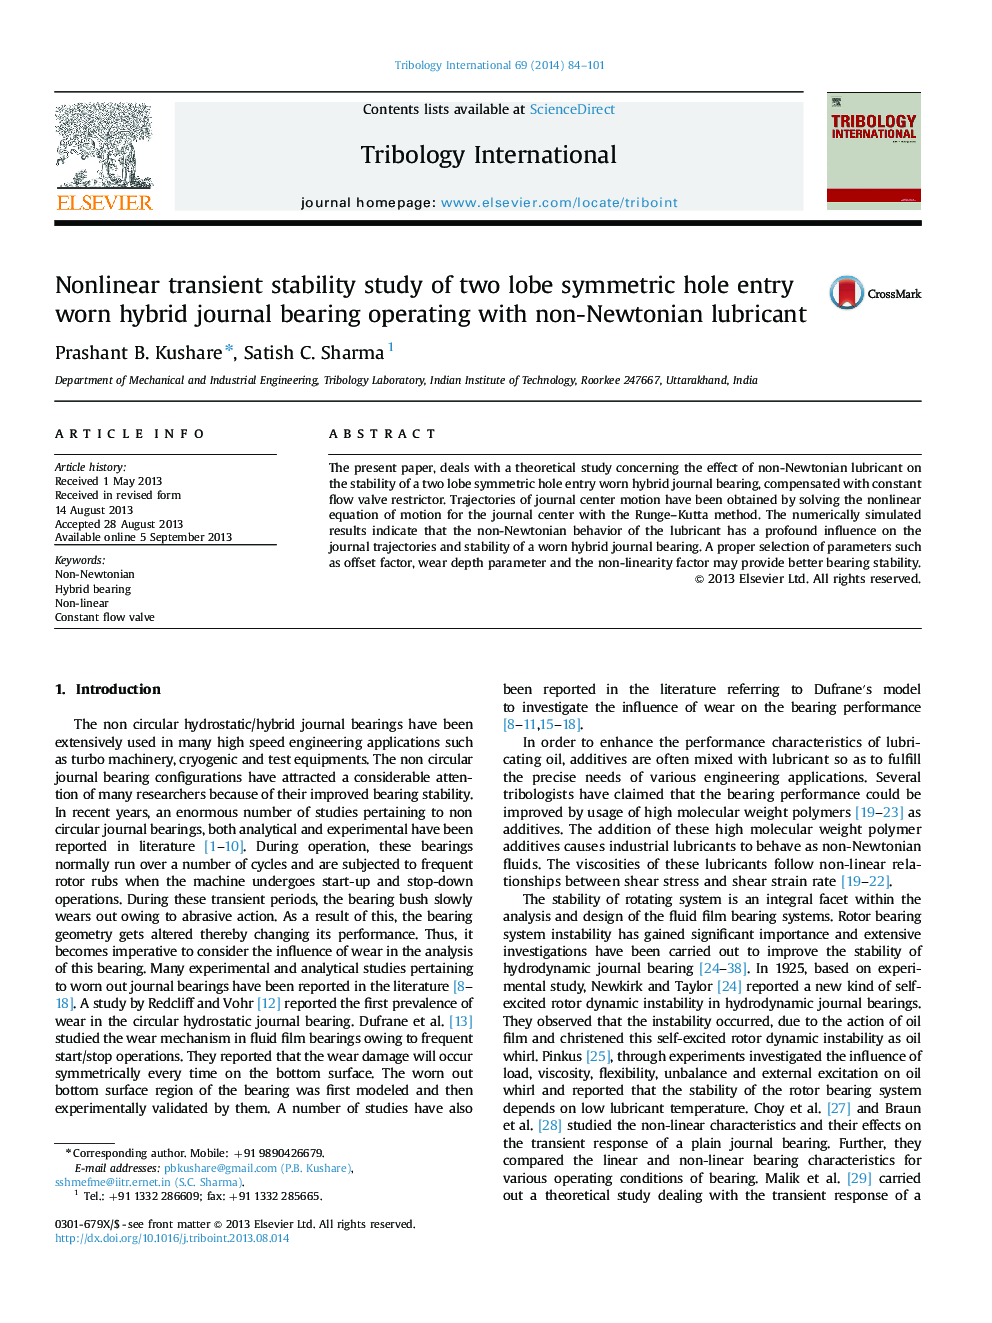 مطالعه پایداری گذرا غیرخطی از دو حفره متقارن سوراخ لوبی با استفاده از مجله هیبرید عاملی با روانکاری غیر نیوتنی 